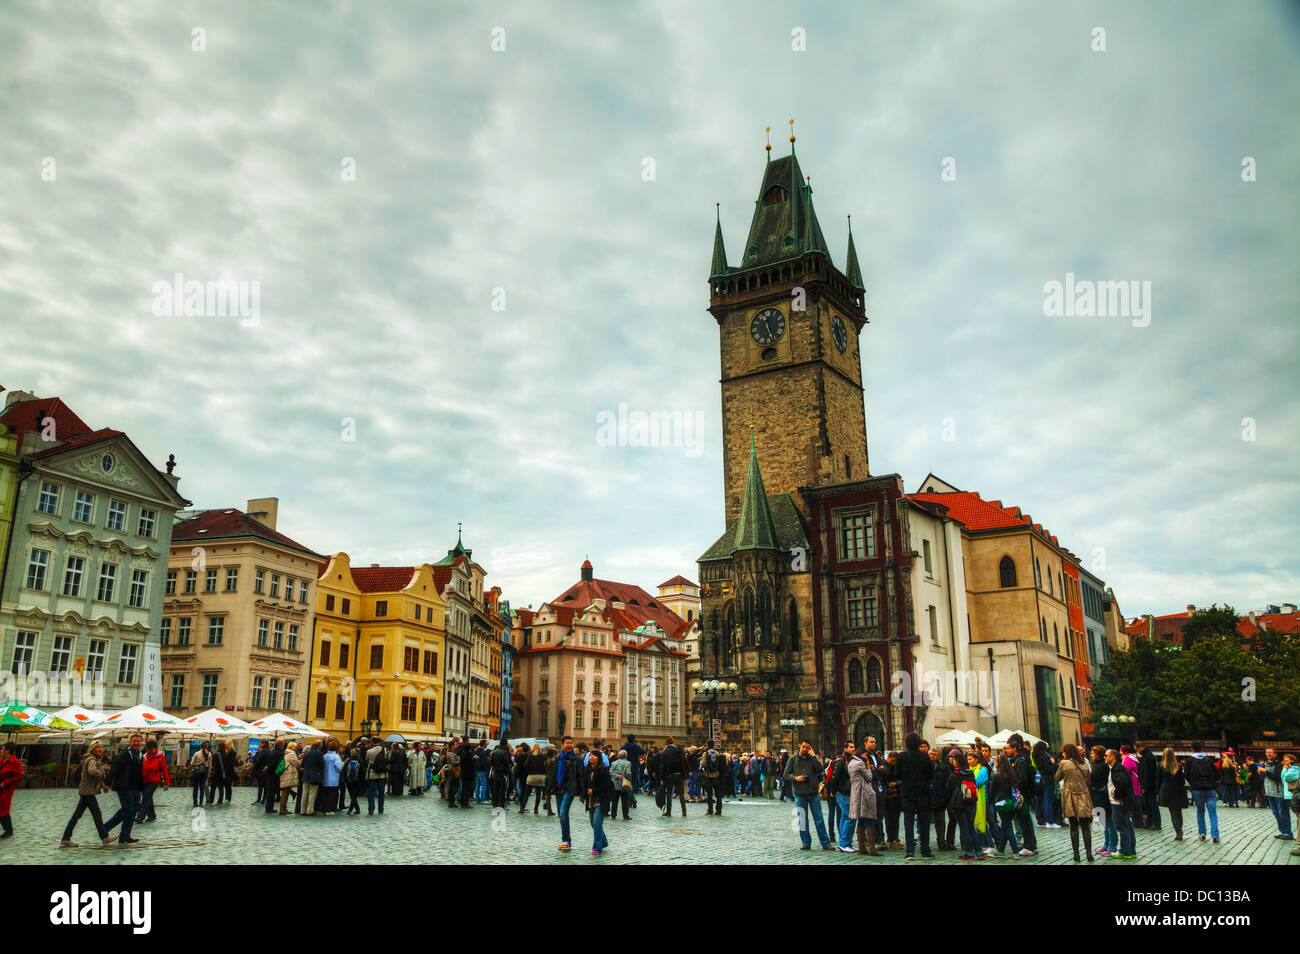 Altstädter Ring mit Touristen in Prag. Altstädter Ring ist ein historischer Platz in der Altstadt. Stockfoto